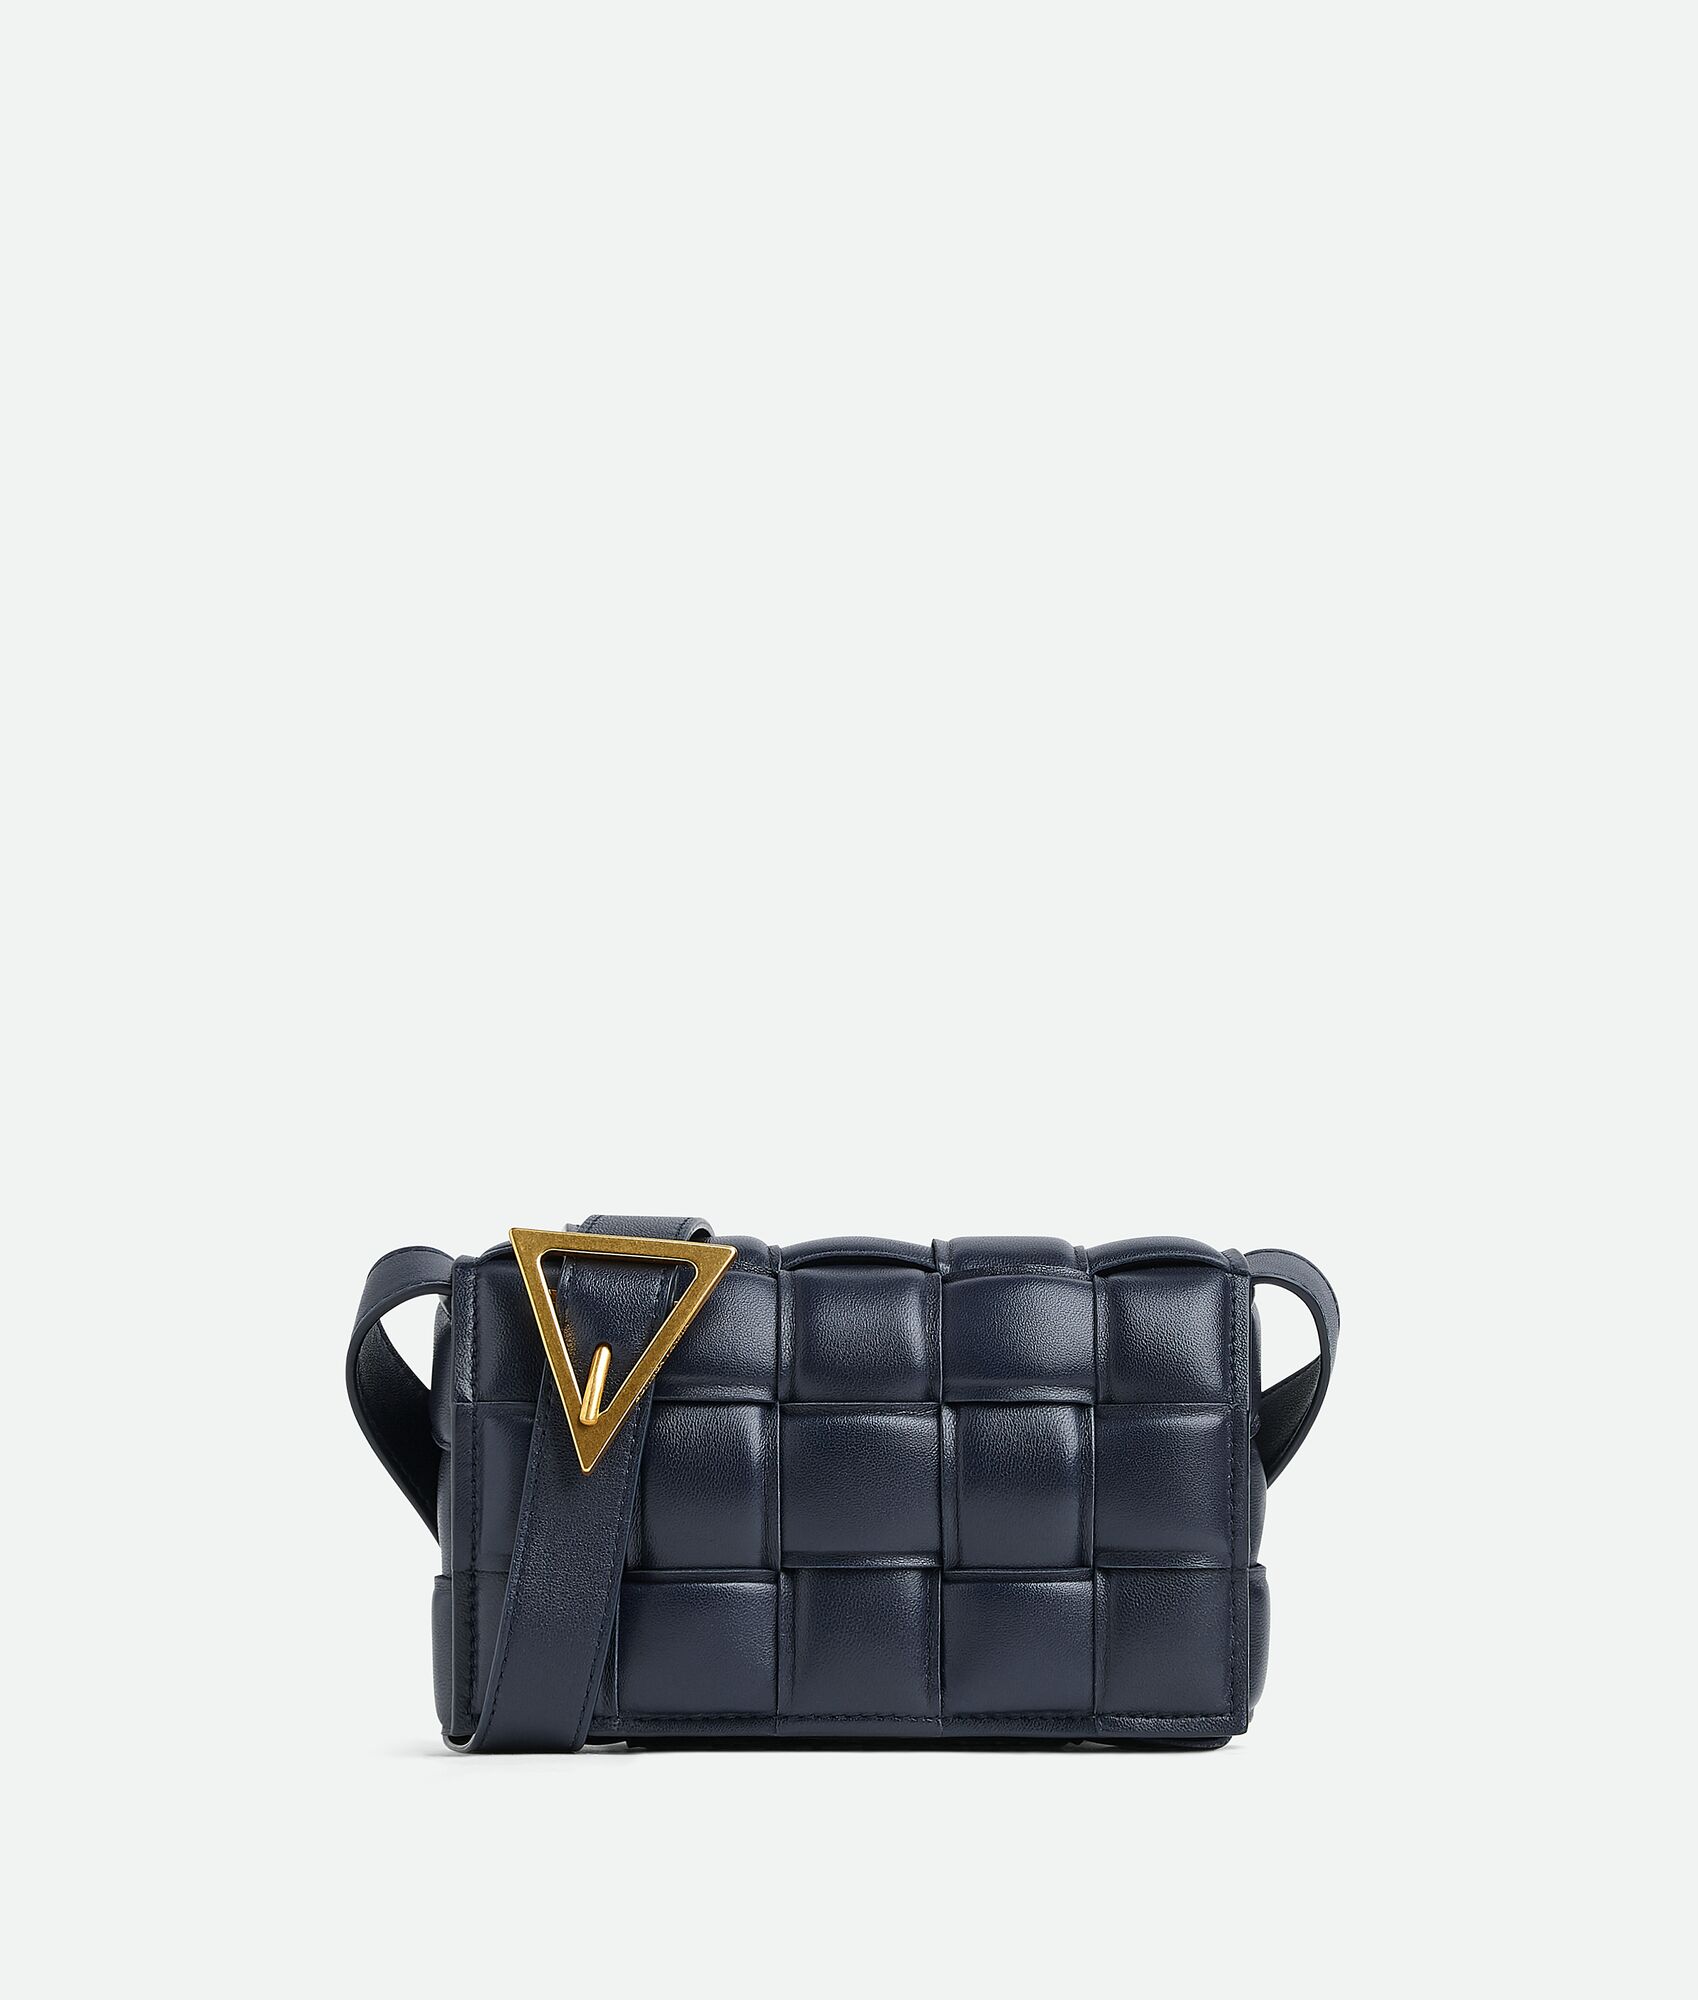 50代女性の普段使いにおすすめなカジュアルに使えるハイブランドバッグは、ボッテガ・ヴェネタのスモール パデッド カセット